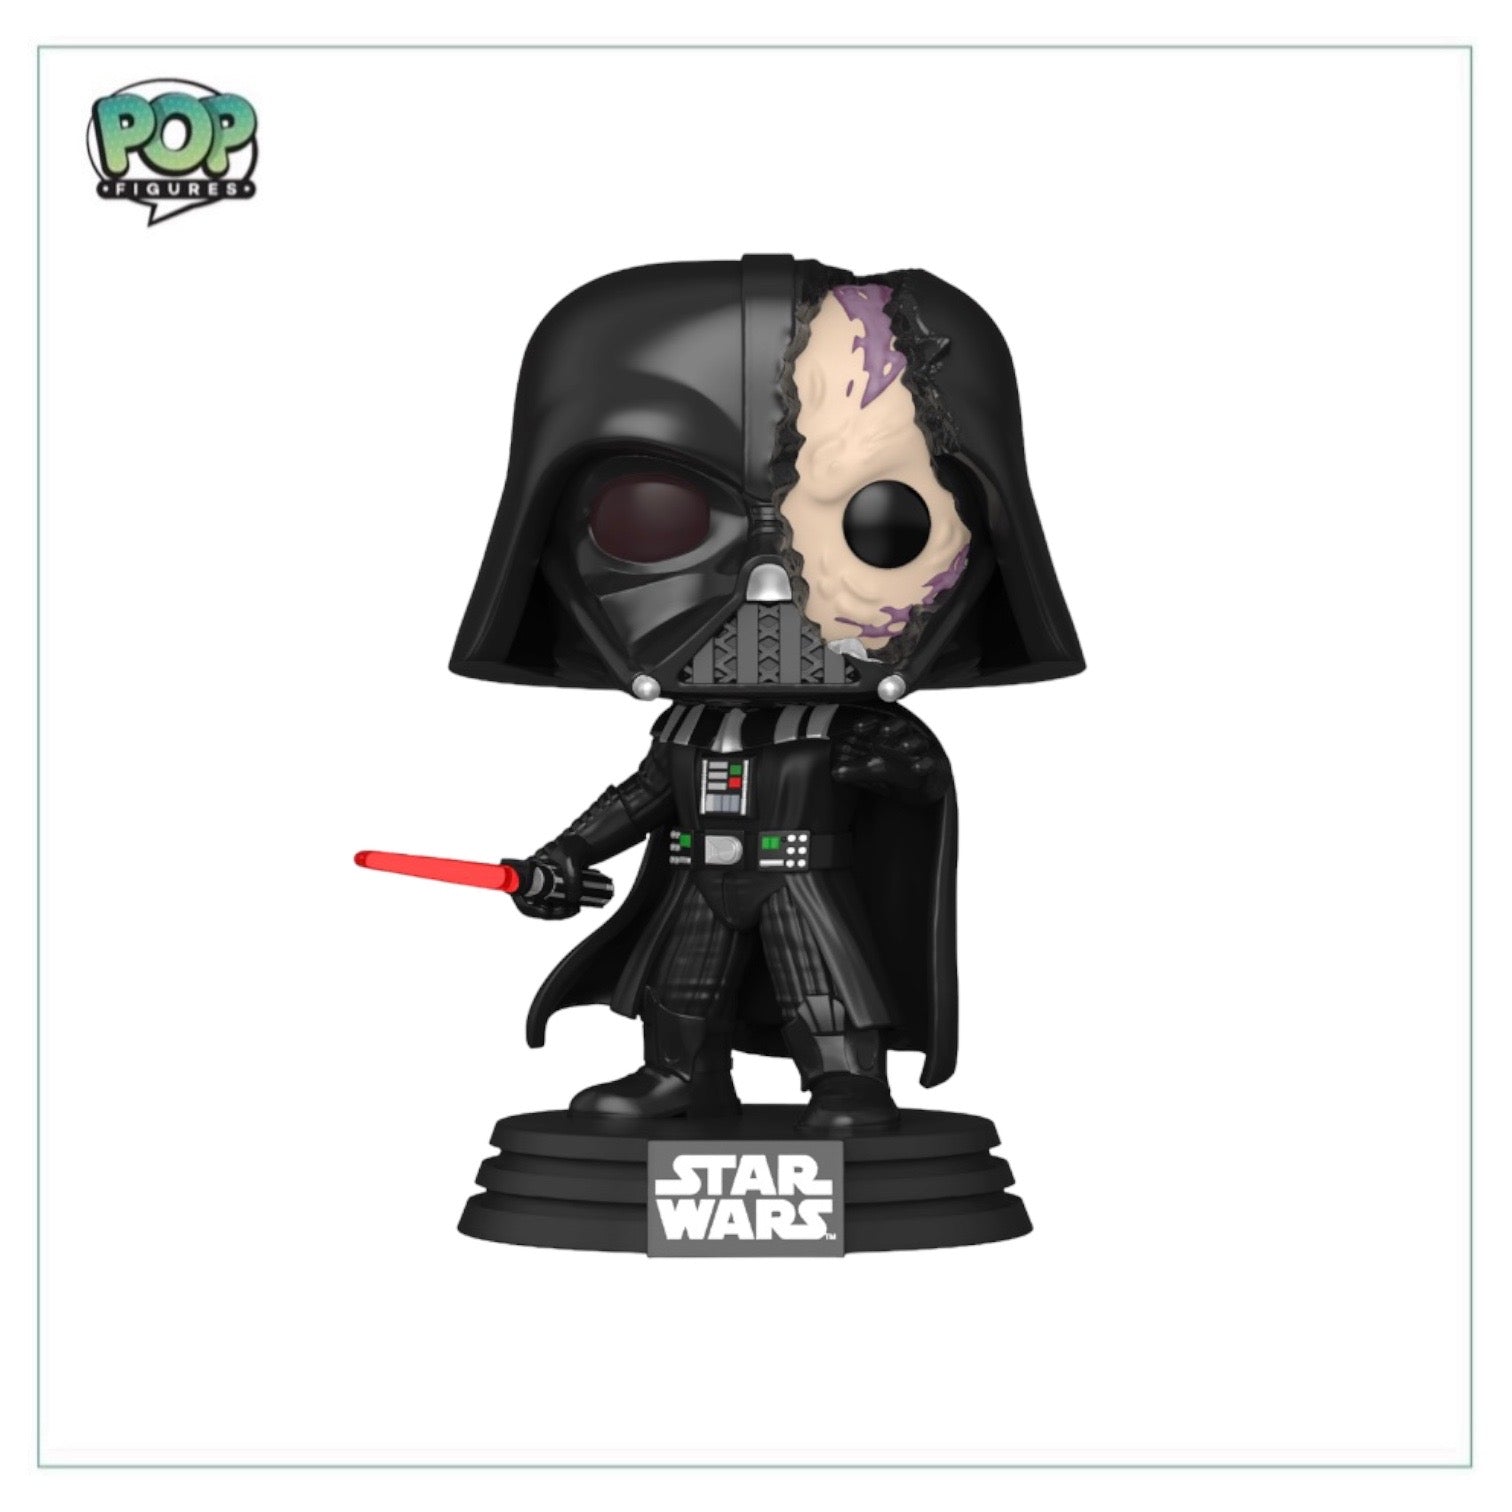 Darth Vader #637 (Battle Damaged) Funko Pop! - Star Wars - Walmart Exclusive